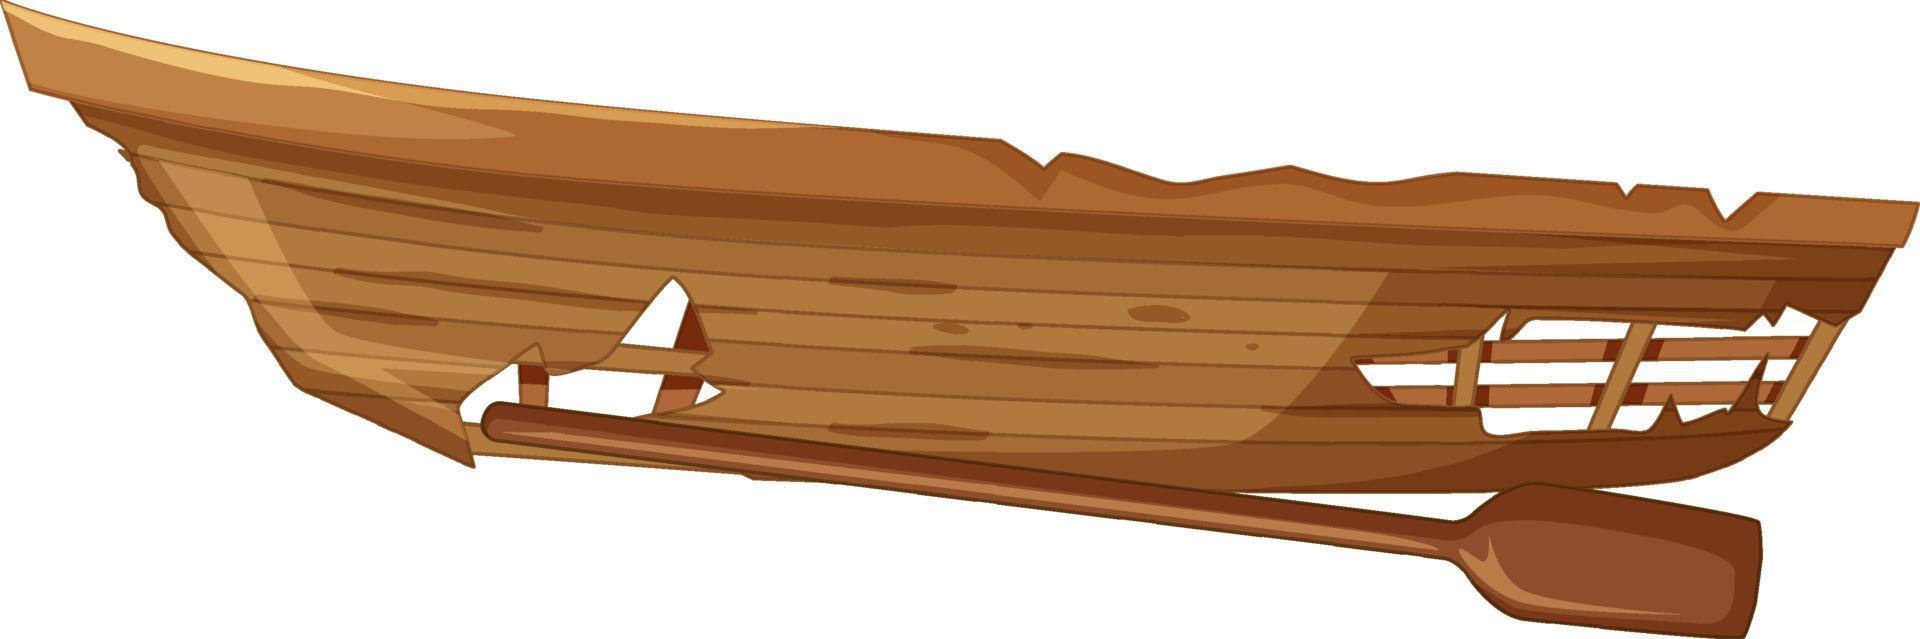 een oude houten gebroken boot op witte achtergrond vector